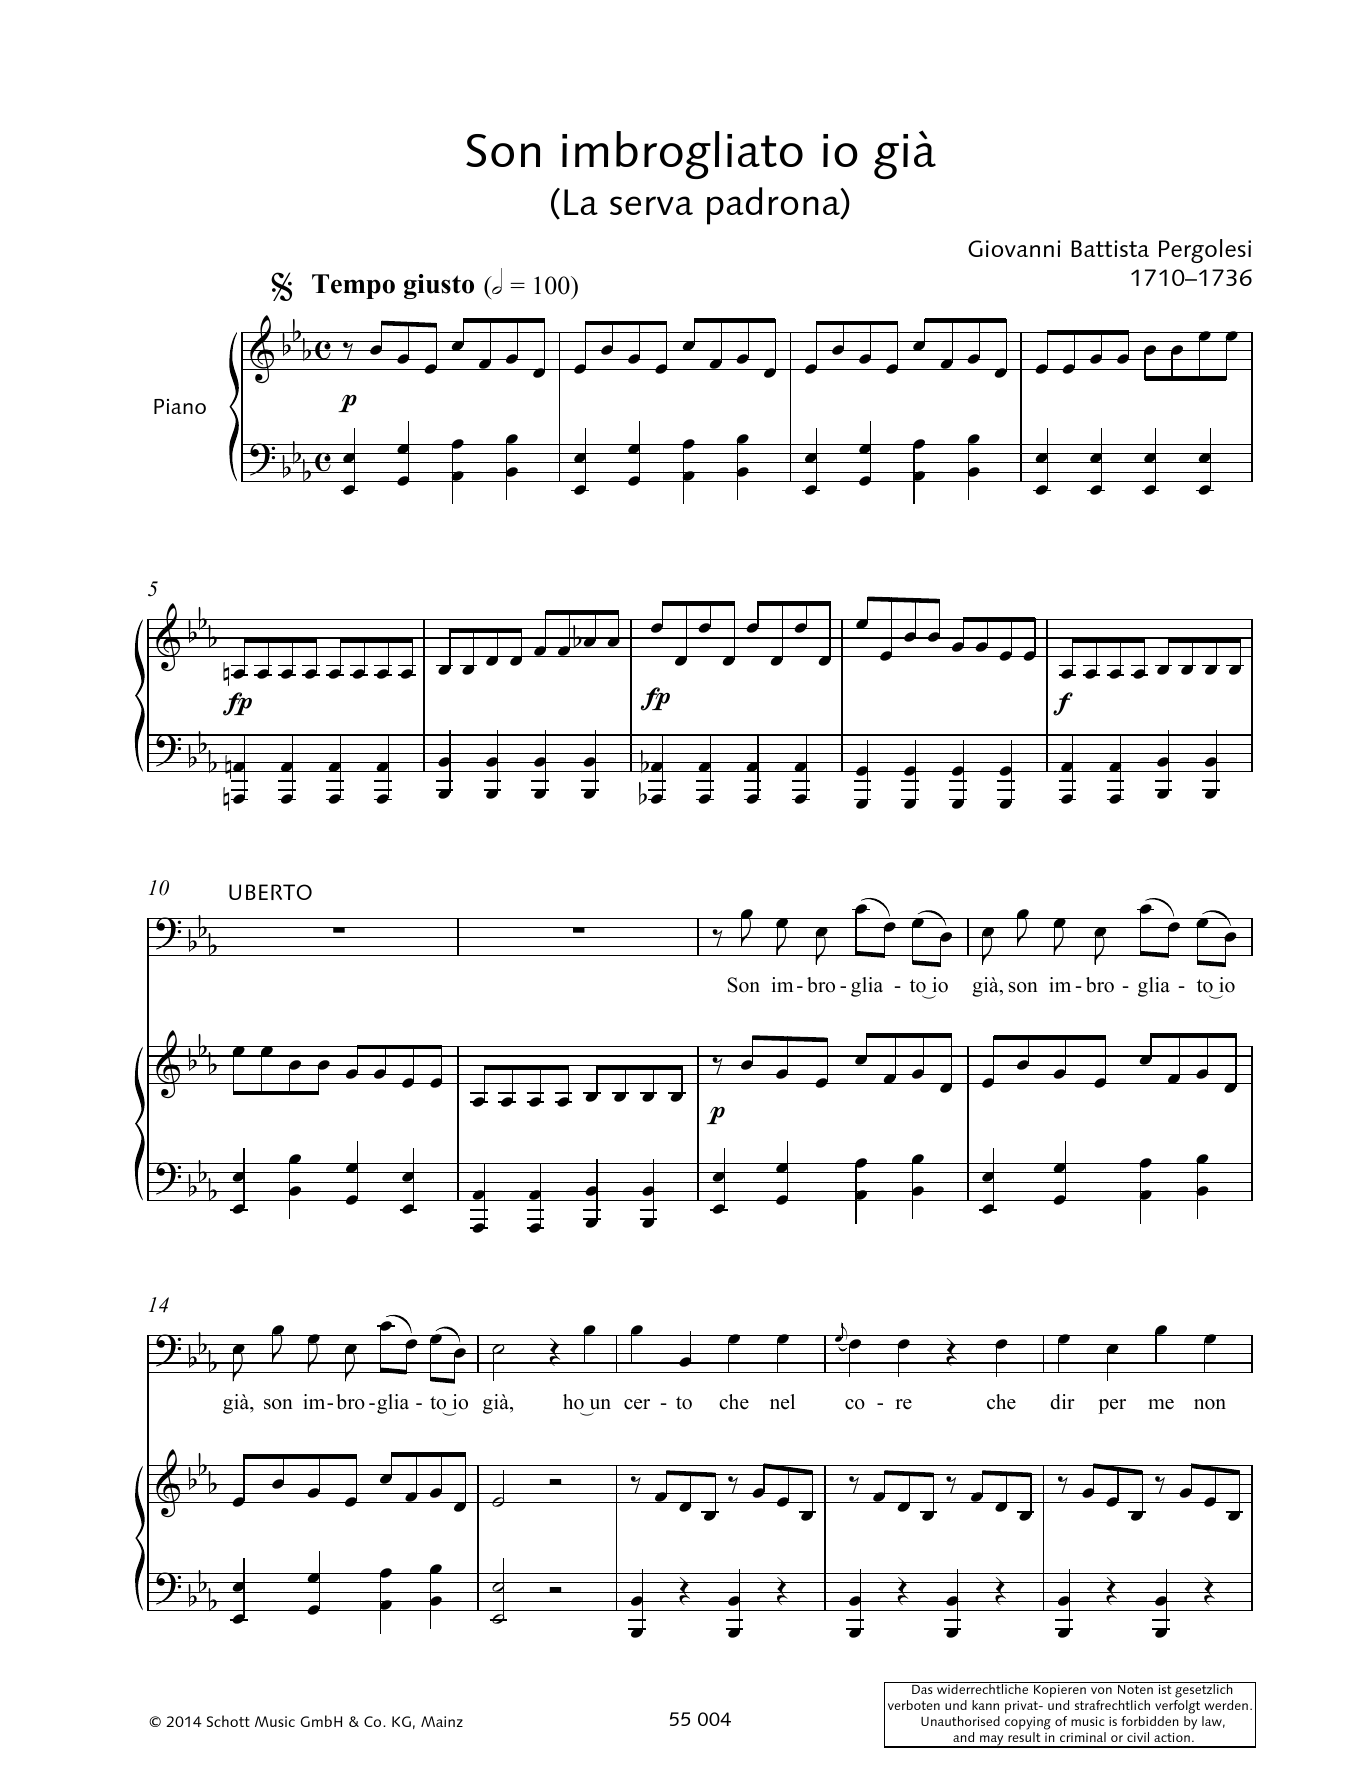 Download Giovanni Battista Pergolesi Son imbrogliato io già Sheet Music and learn how to play Piano & Vocal PDF digital score in minutes